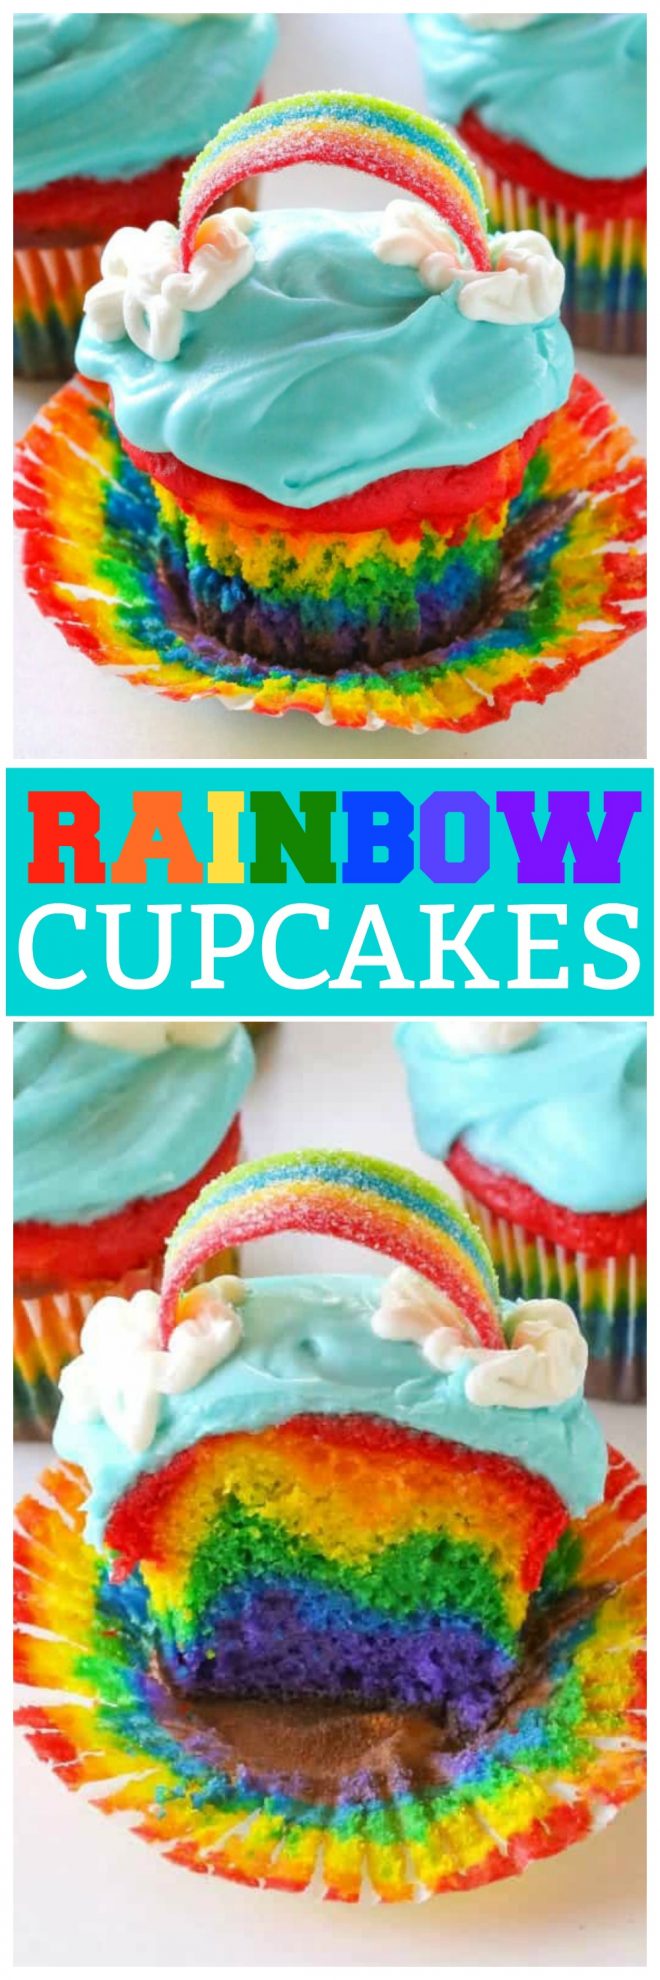 cupcakes arco-íris